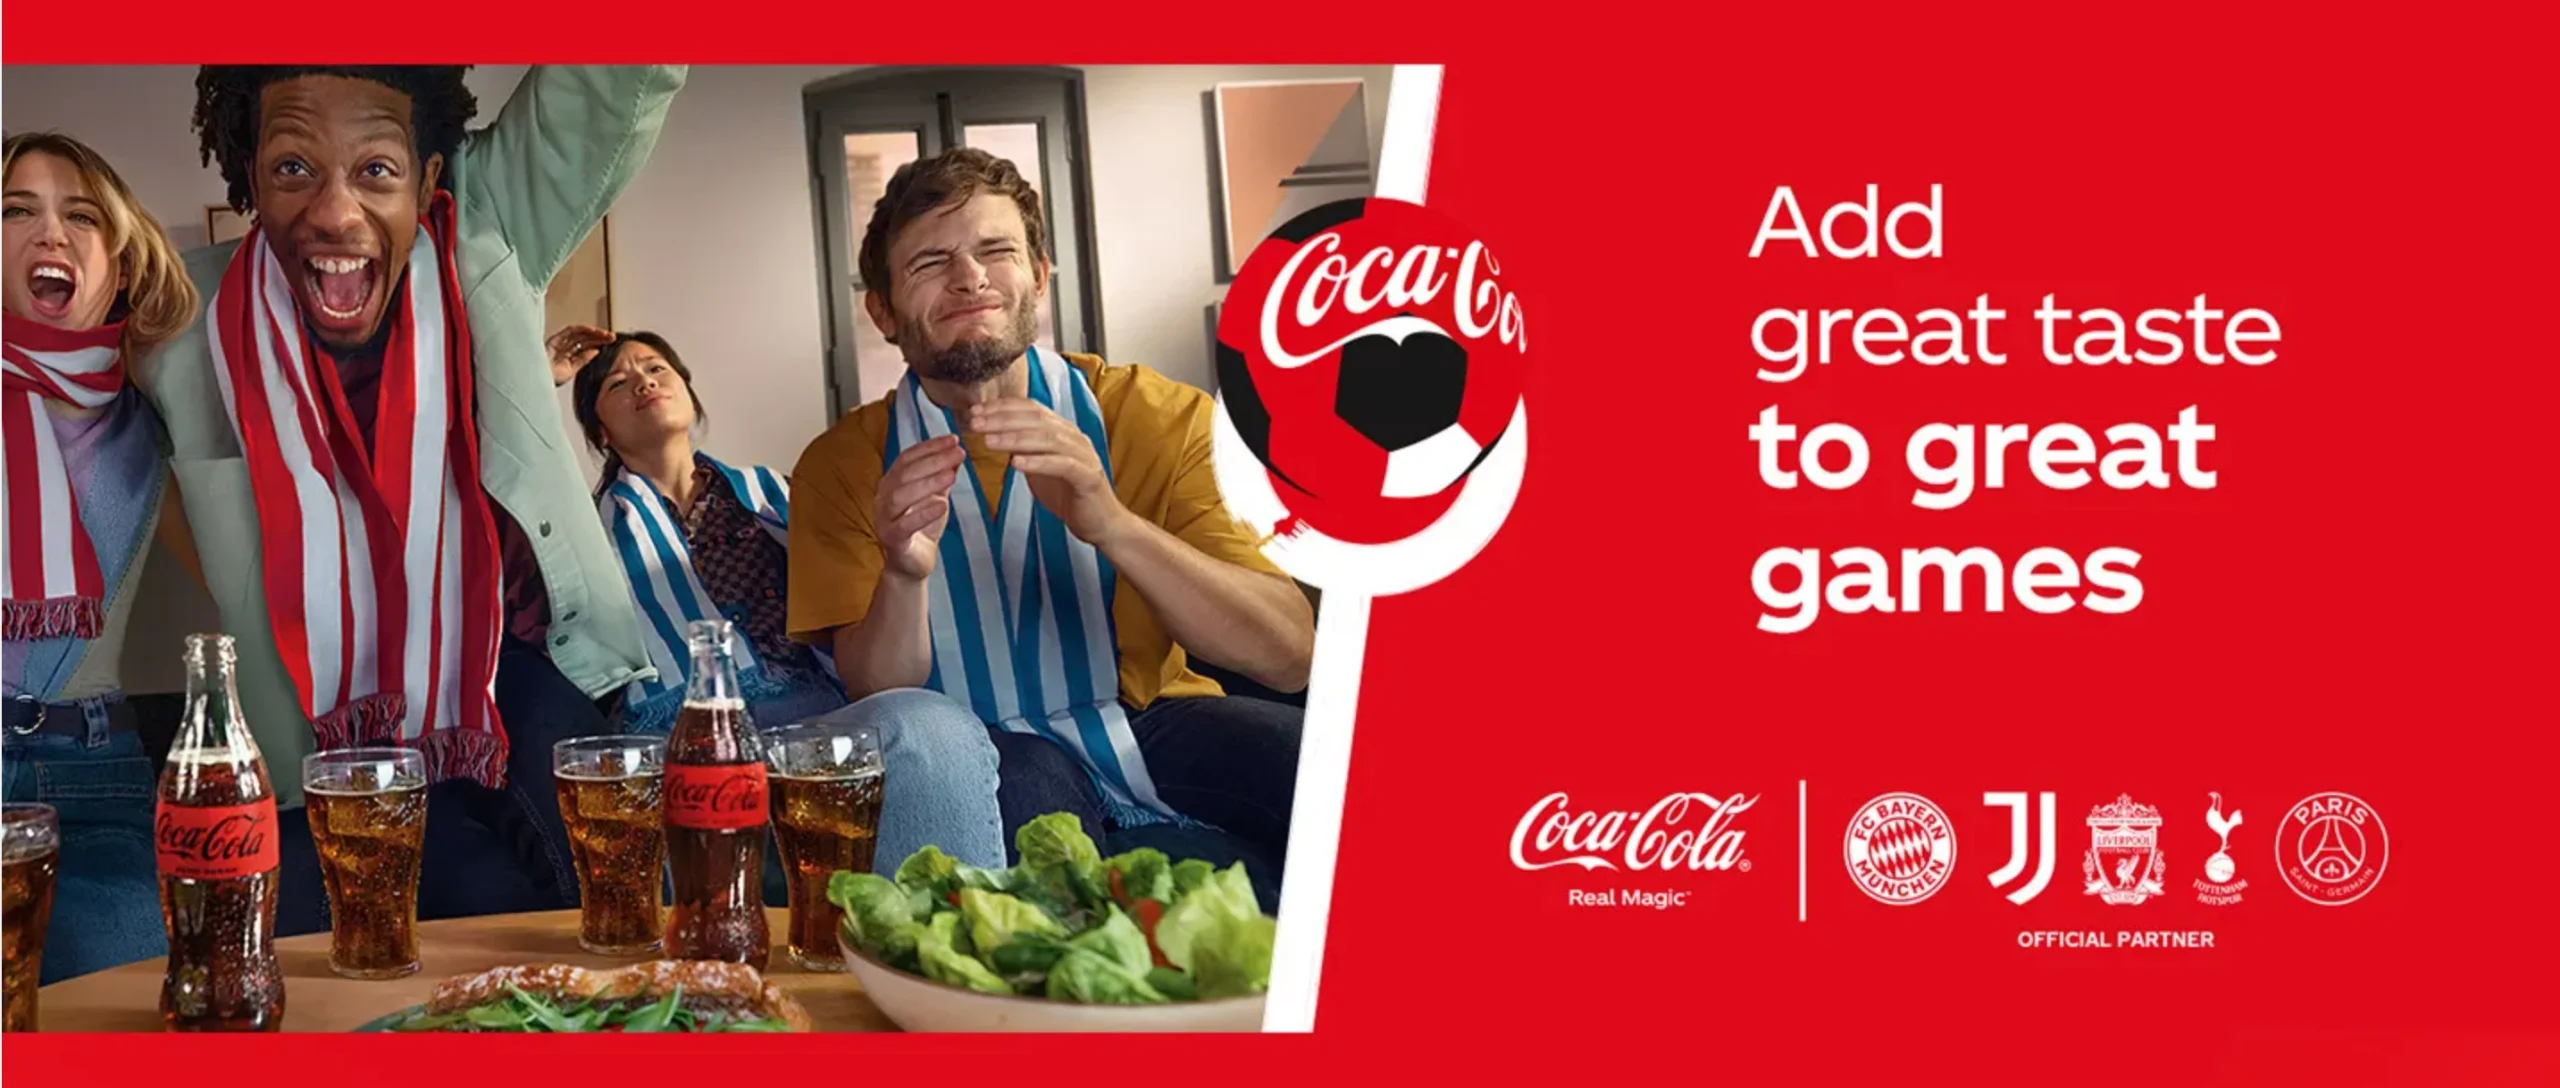 Exemplo de UVP da Coca-Cola com torcedores de futebol como mercado-alvo